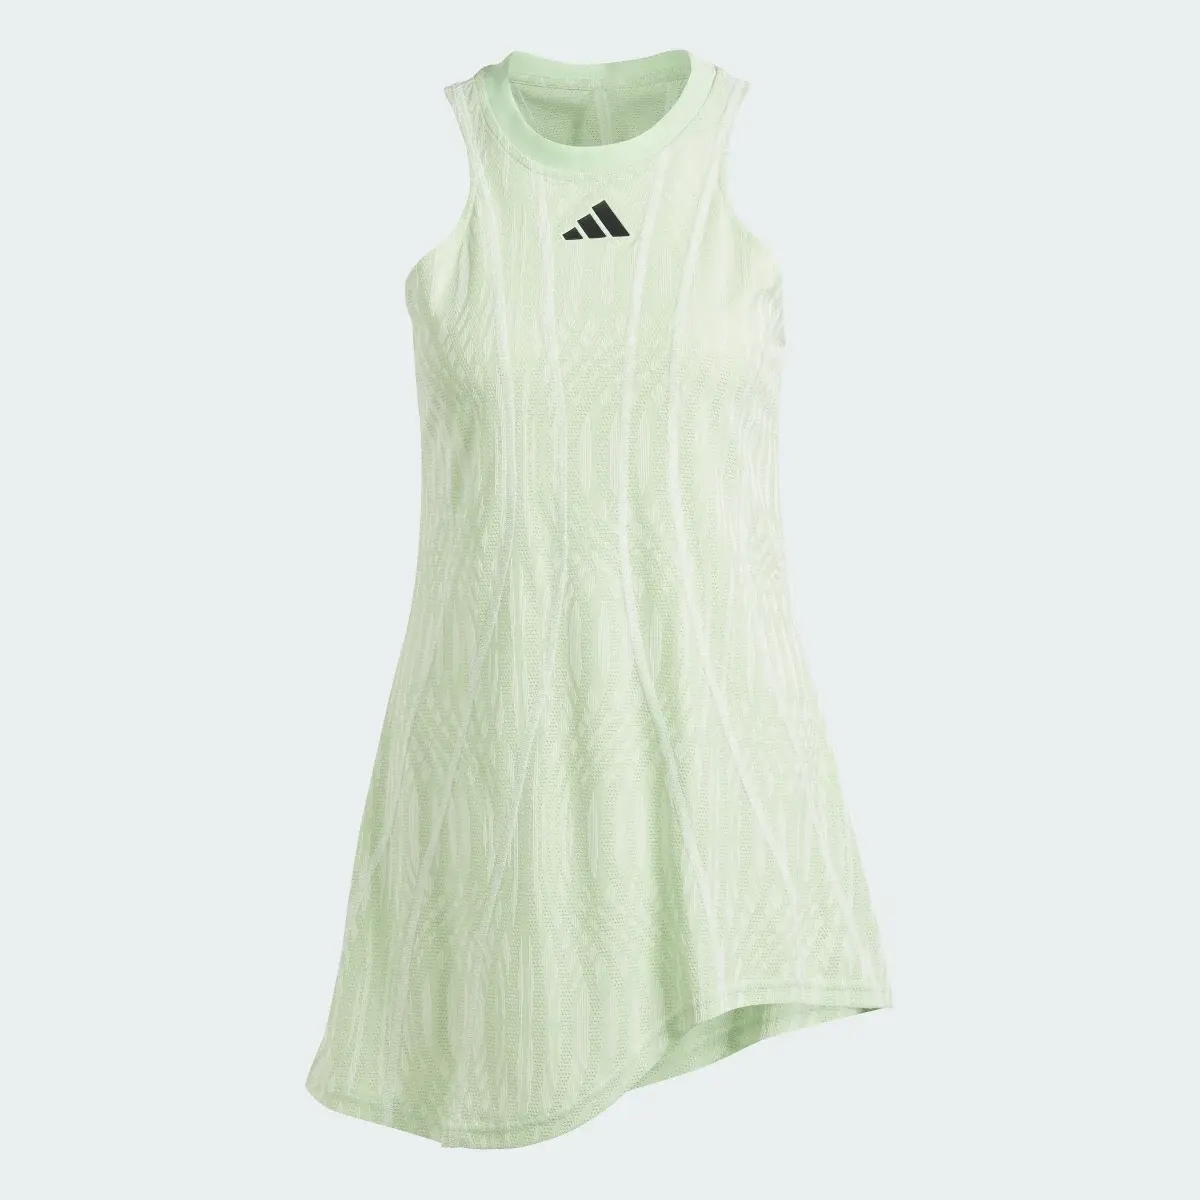 Adidas Tennis Airchill Pro Dress. 1